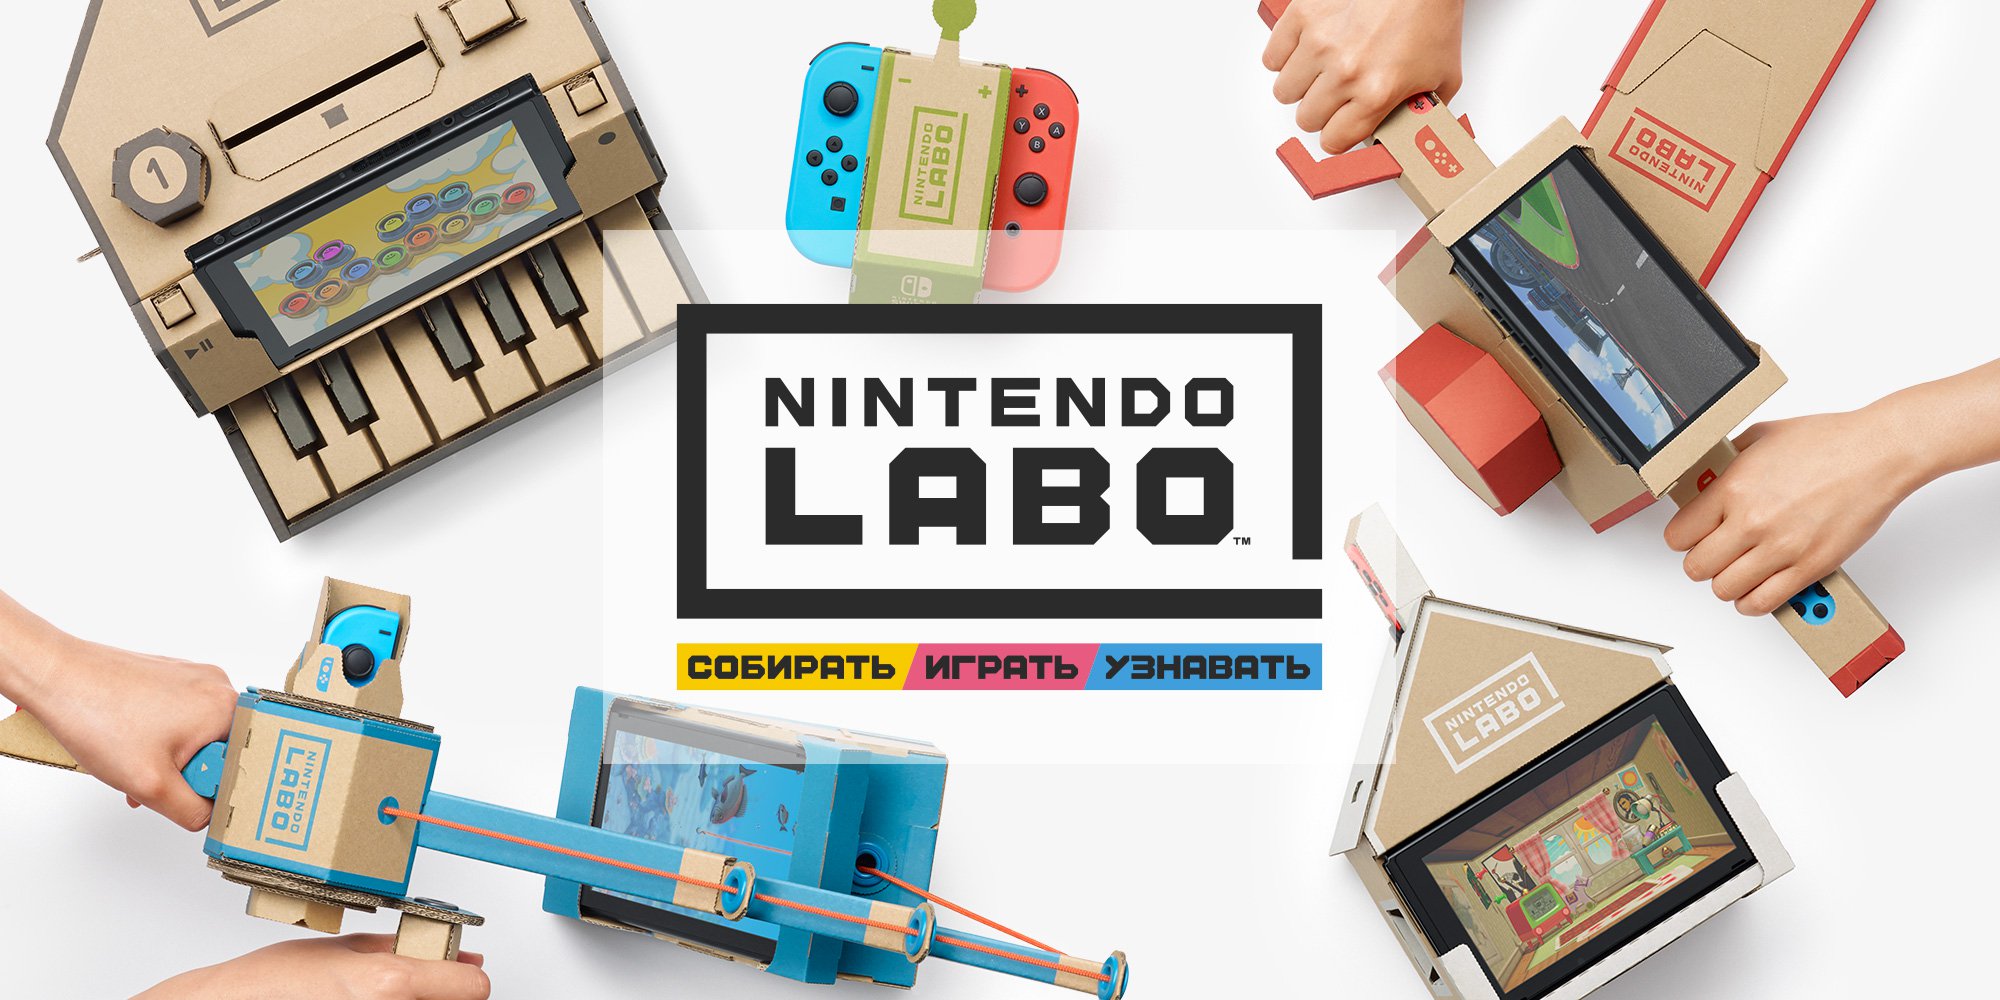 #video | Fai da te: interattivi progettisti Nintendo Labo